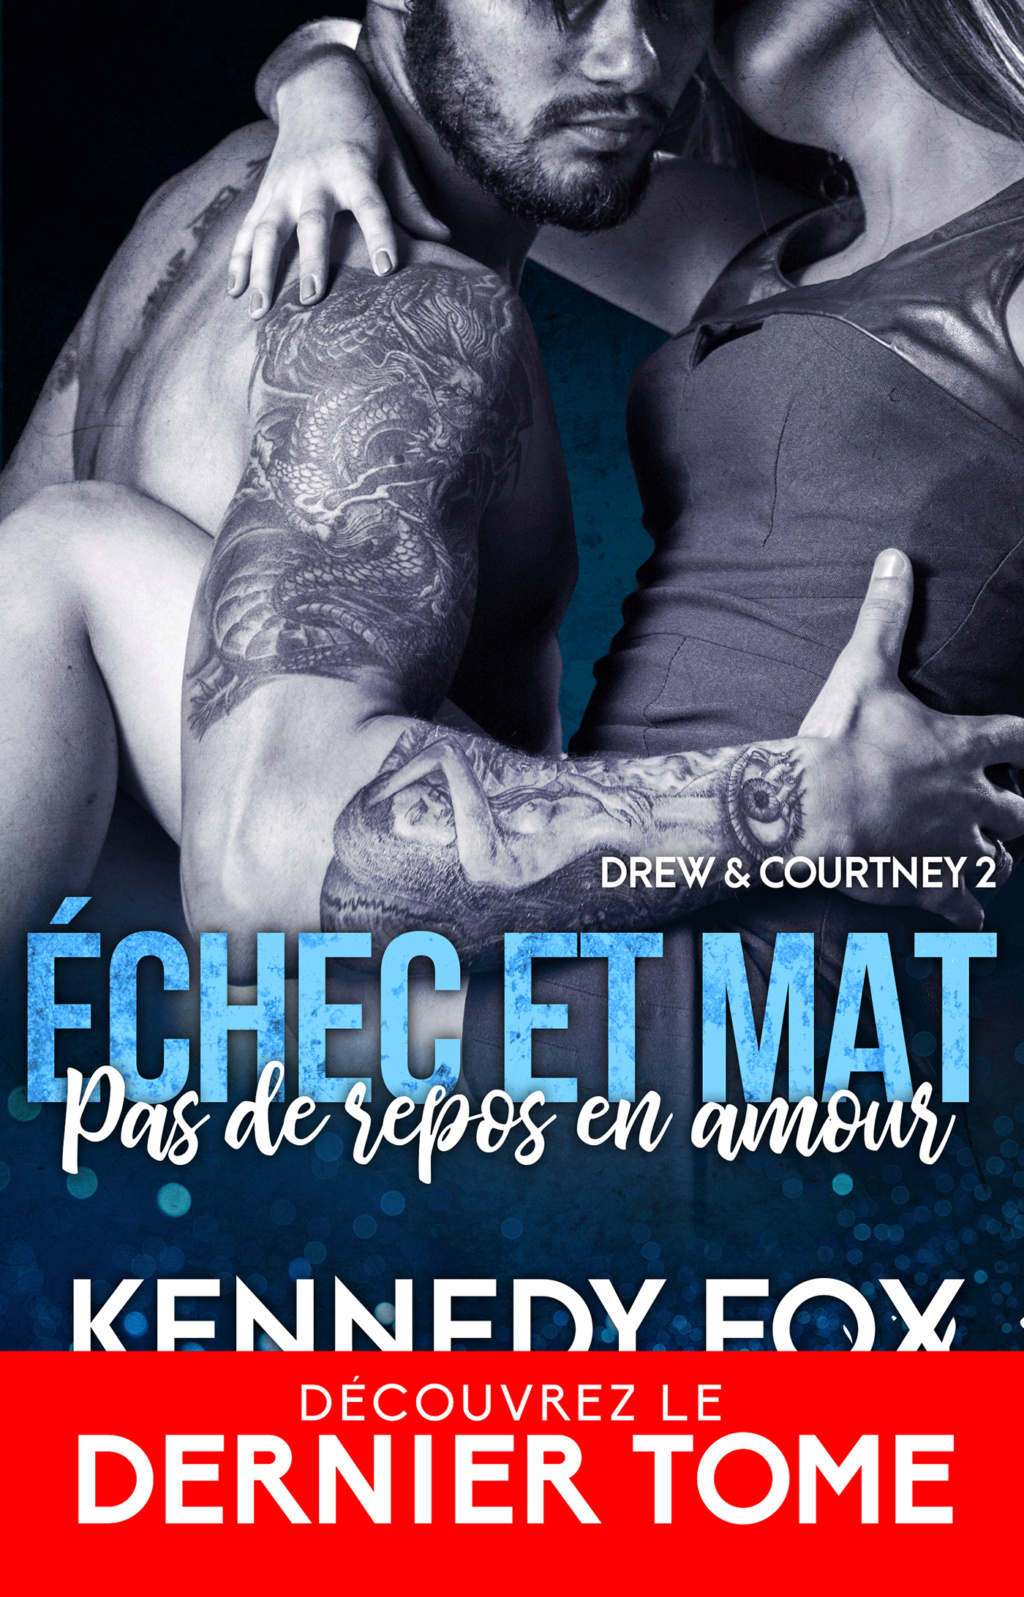 Drew & Courtney - Tome 2 : Pas de repos en amour de Kennedy Fox 3e58db10